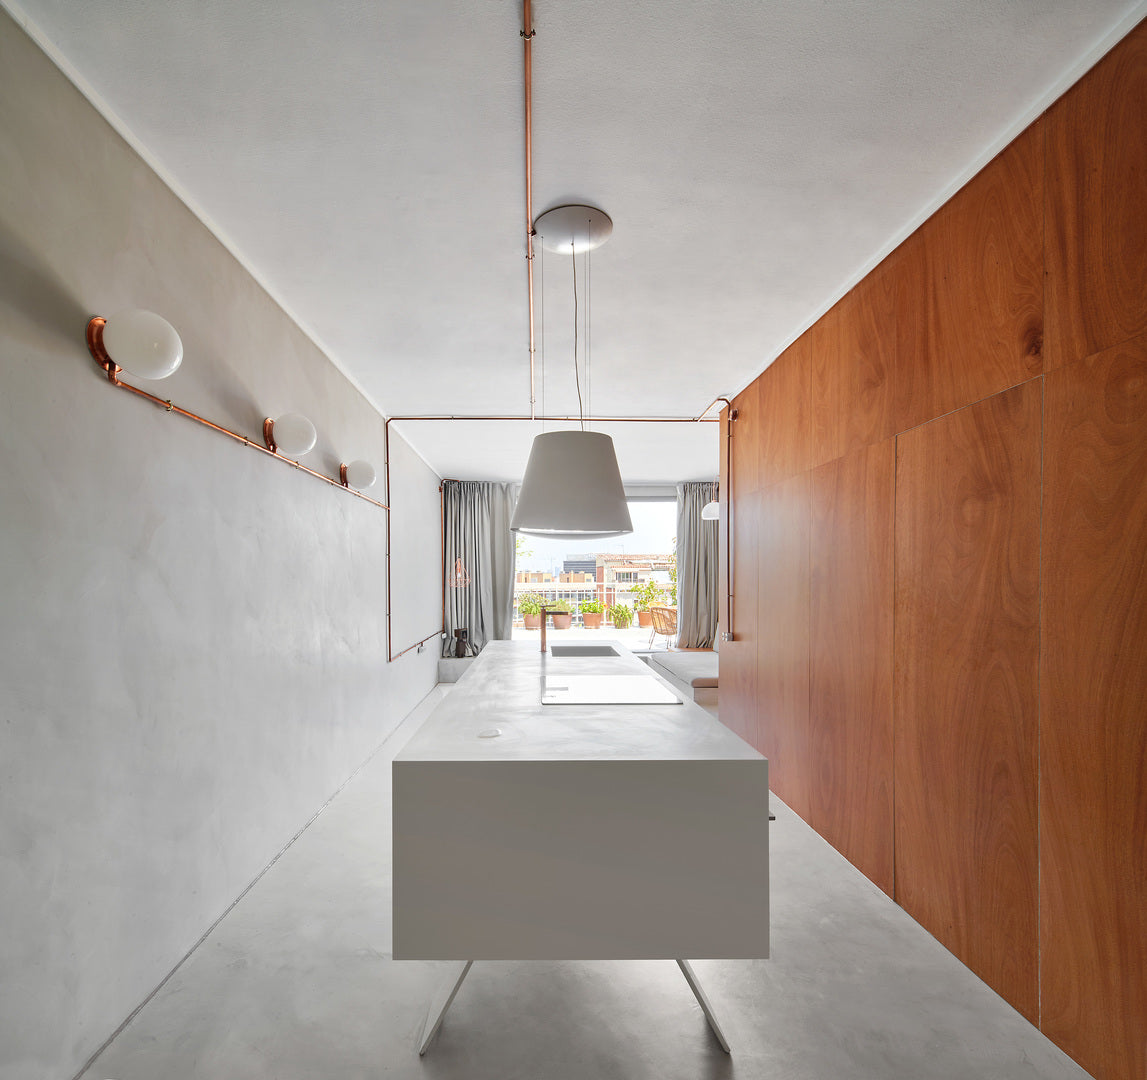 small spaces architecture kitchen design